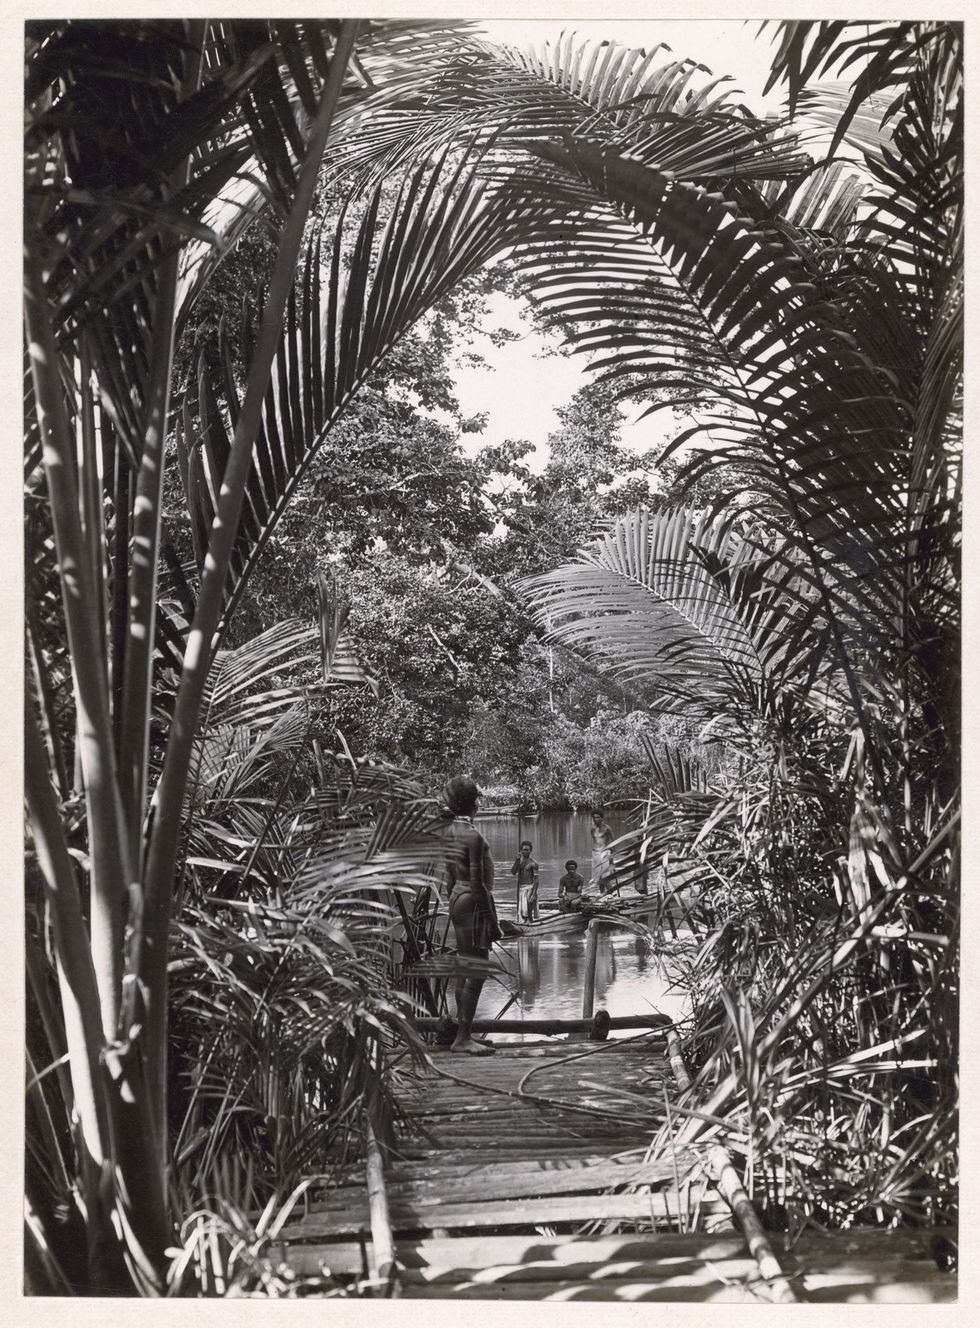 In 1921 zag kapitein Frank Hurley in de dichte jungle van PapoeaNieuwGuinea in de verte de rivier de Opi